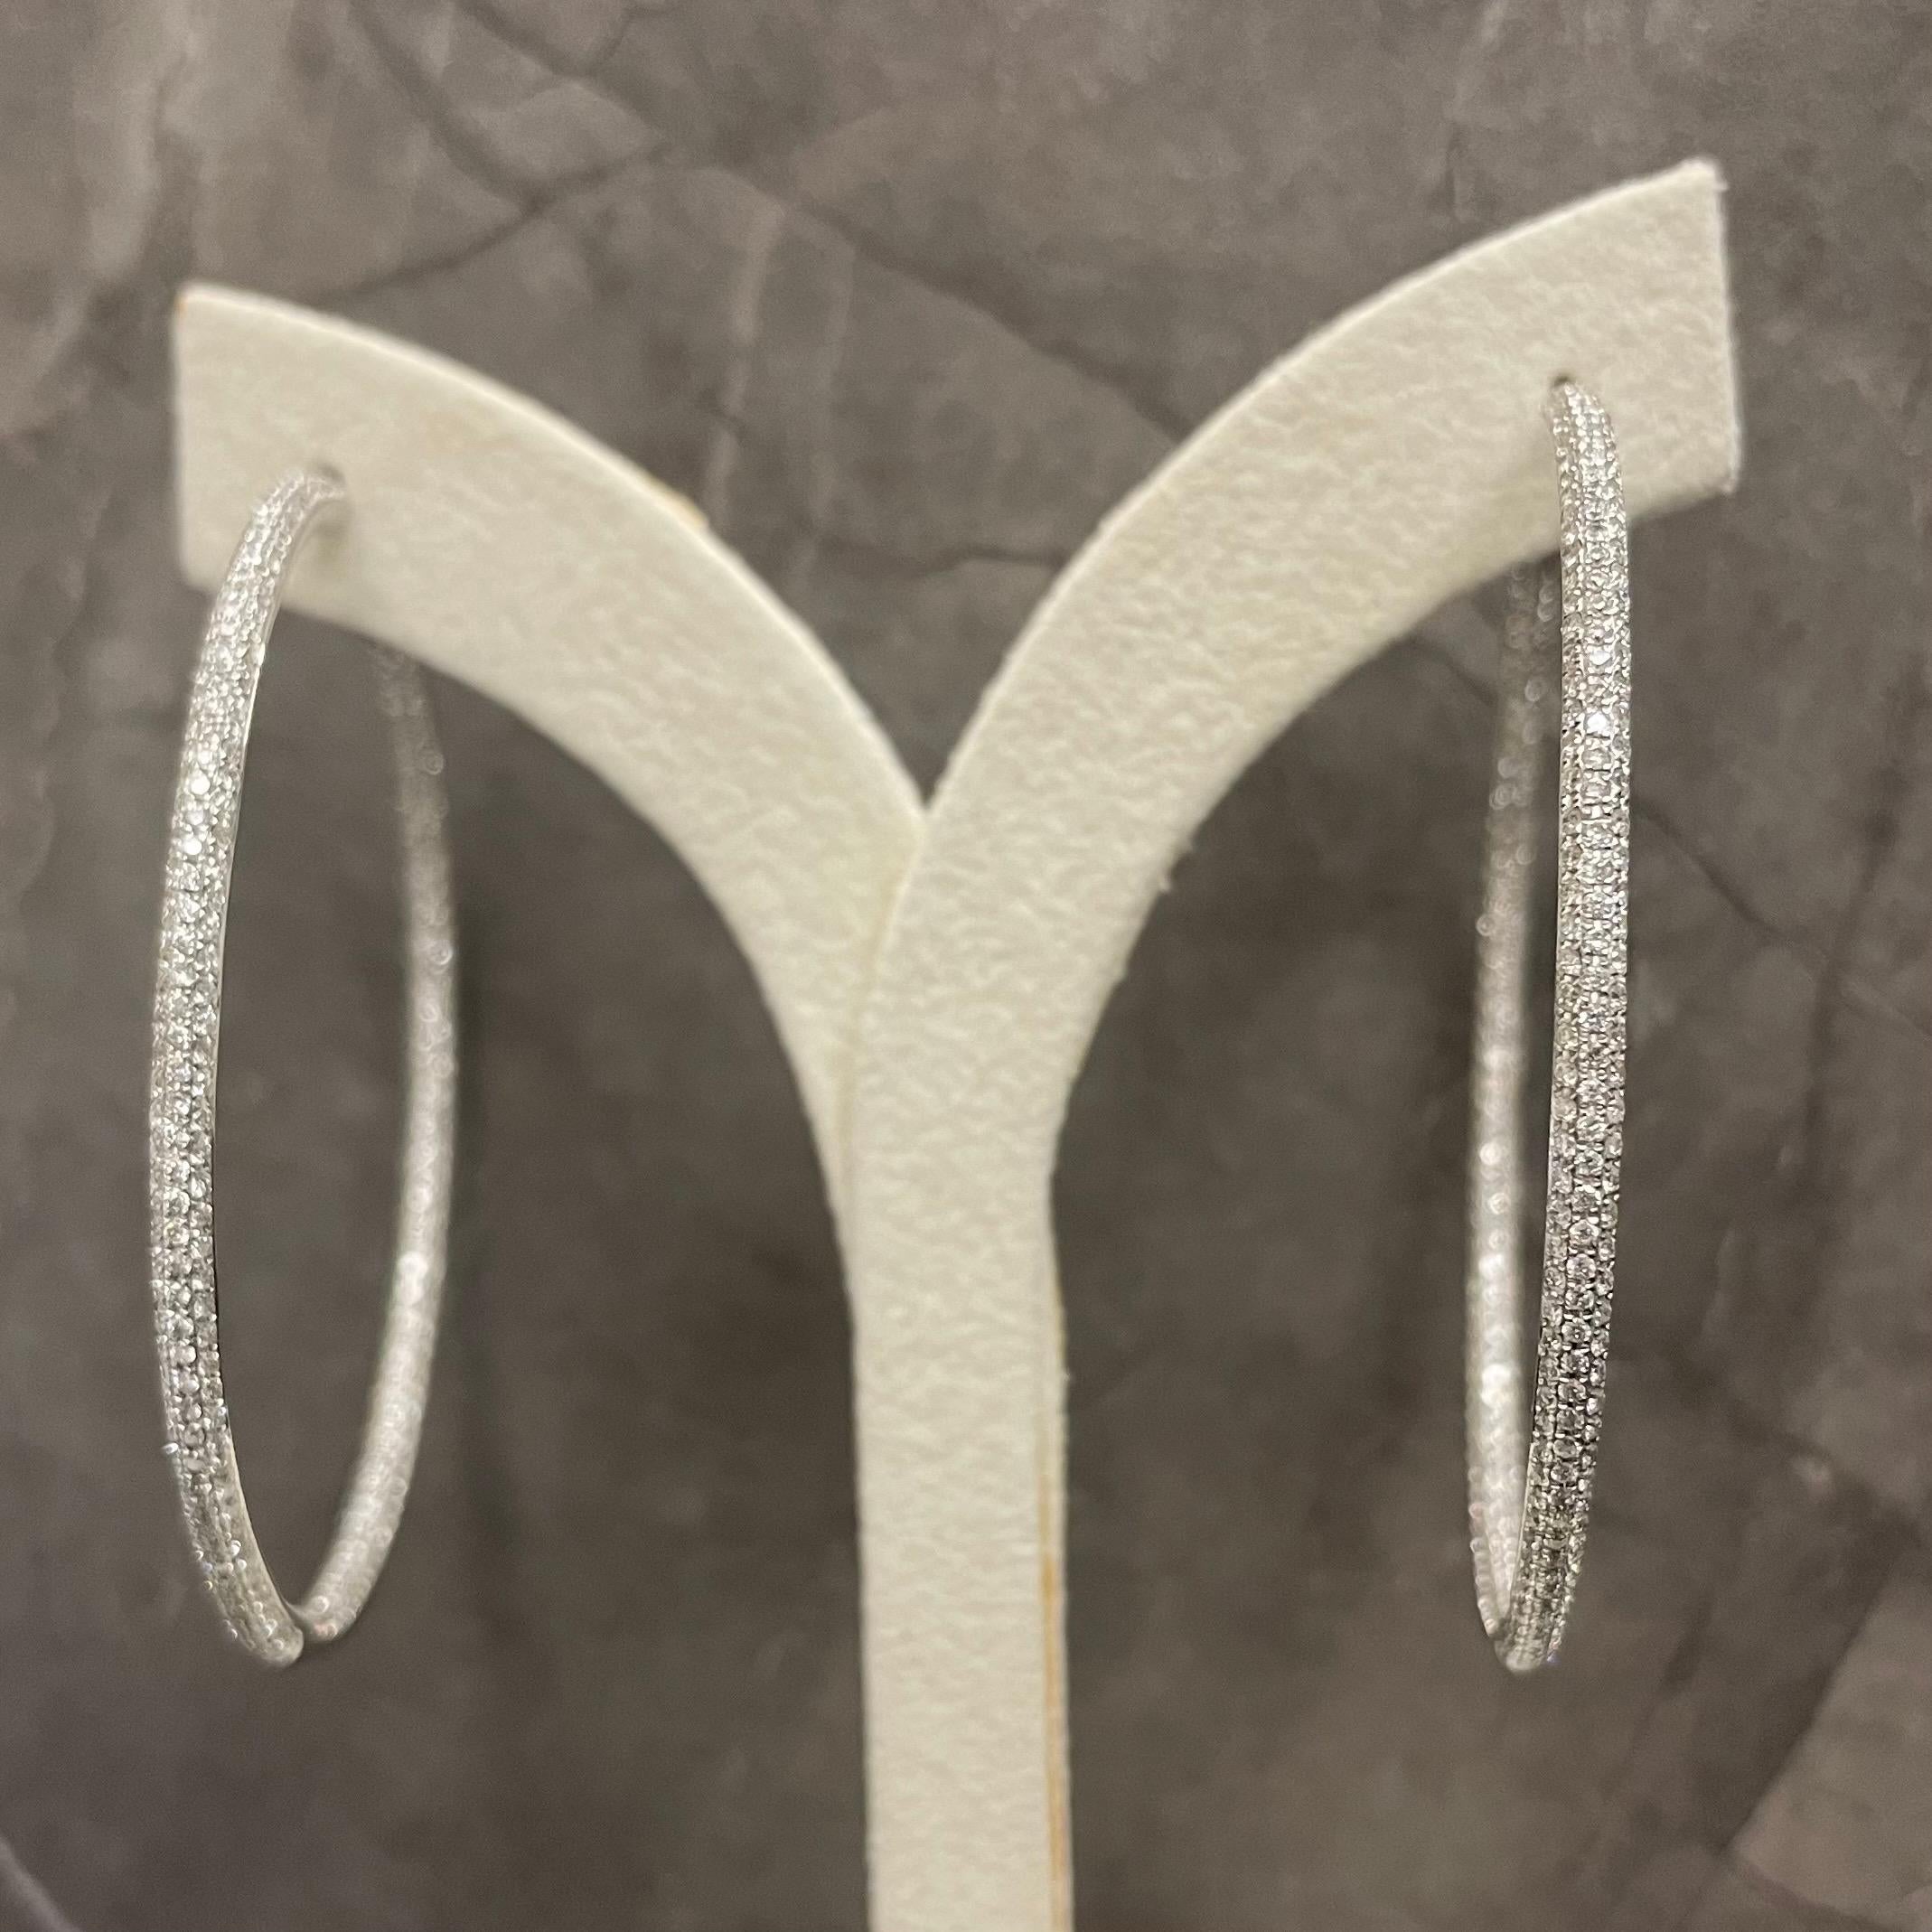 18K White Gold Diamond Hoop Earrings